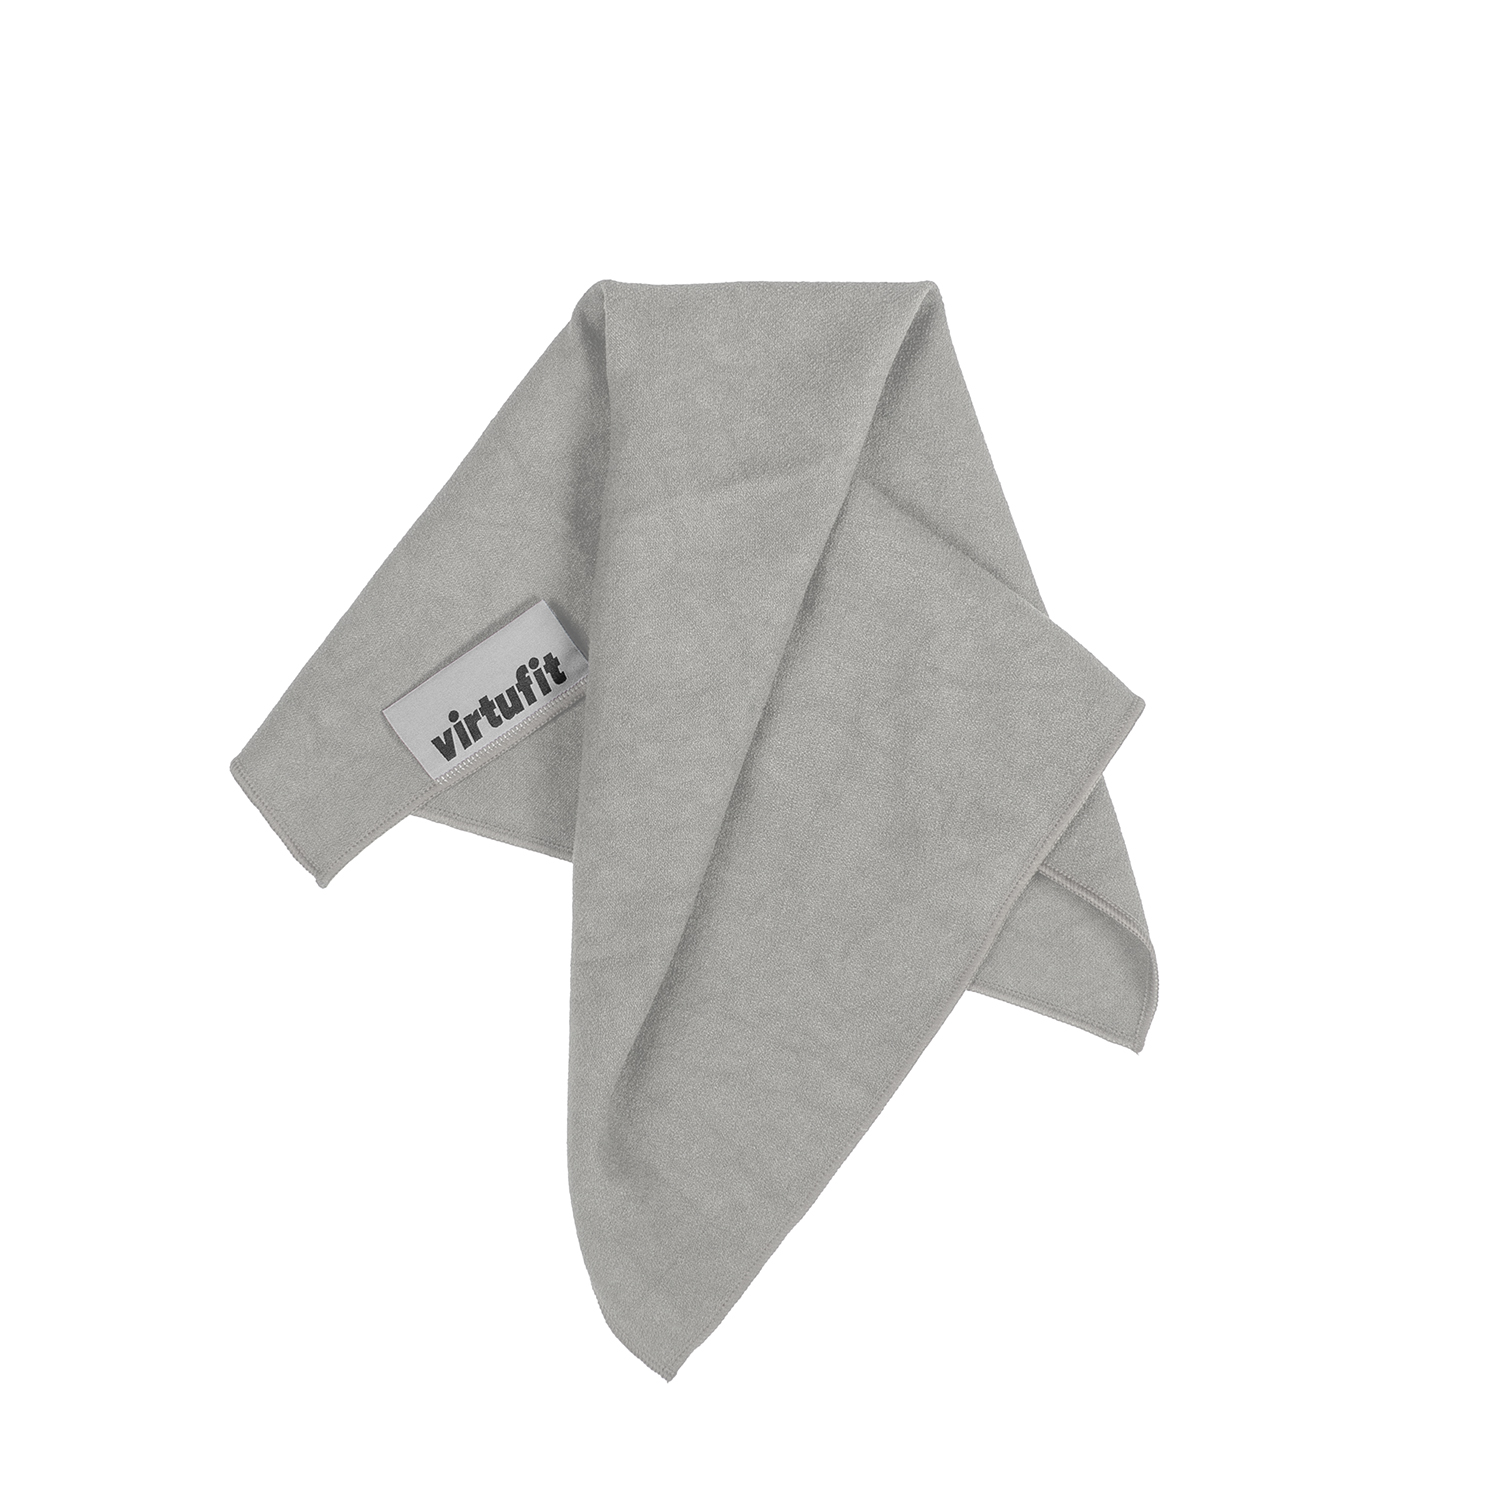 VirtuFit Premium Yoga Handdoek - 76 x 51 cm - Natural Grey